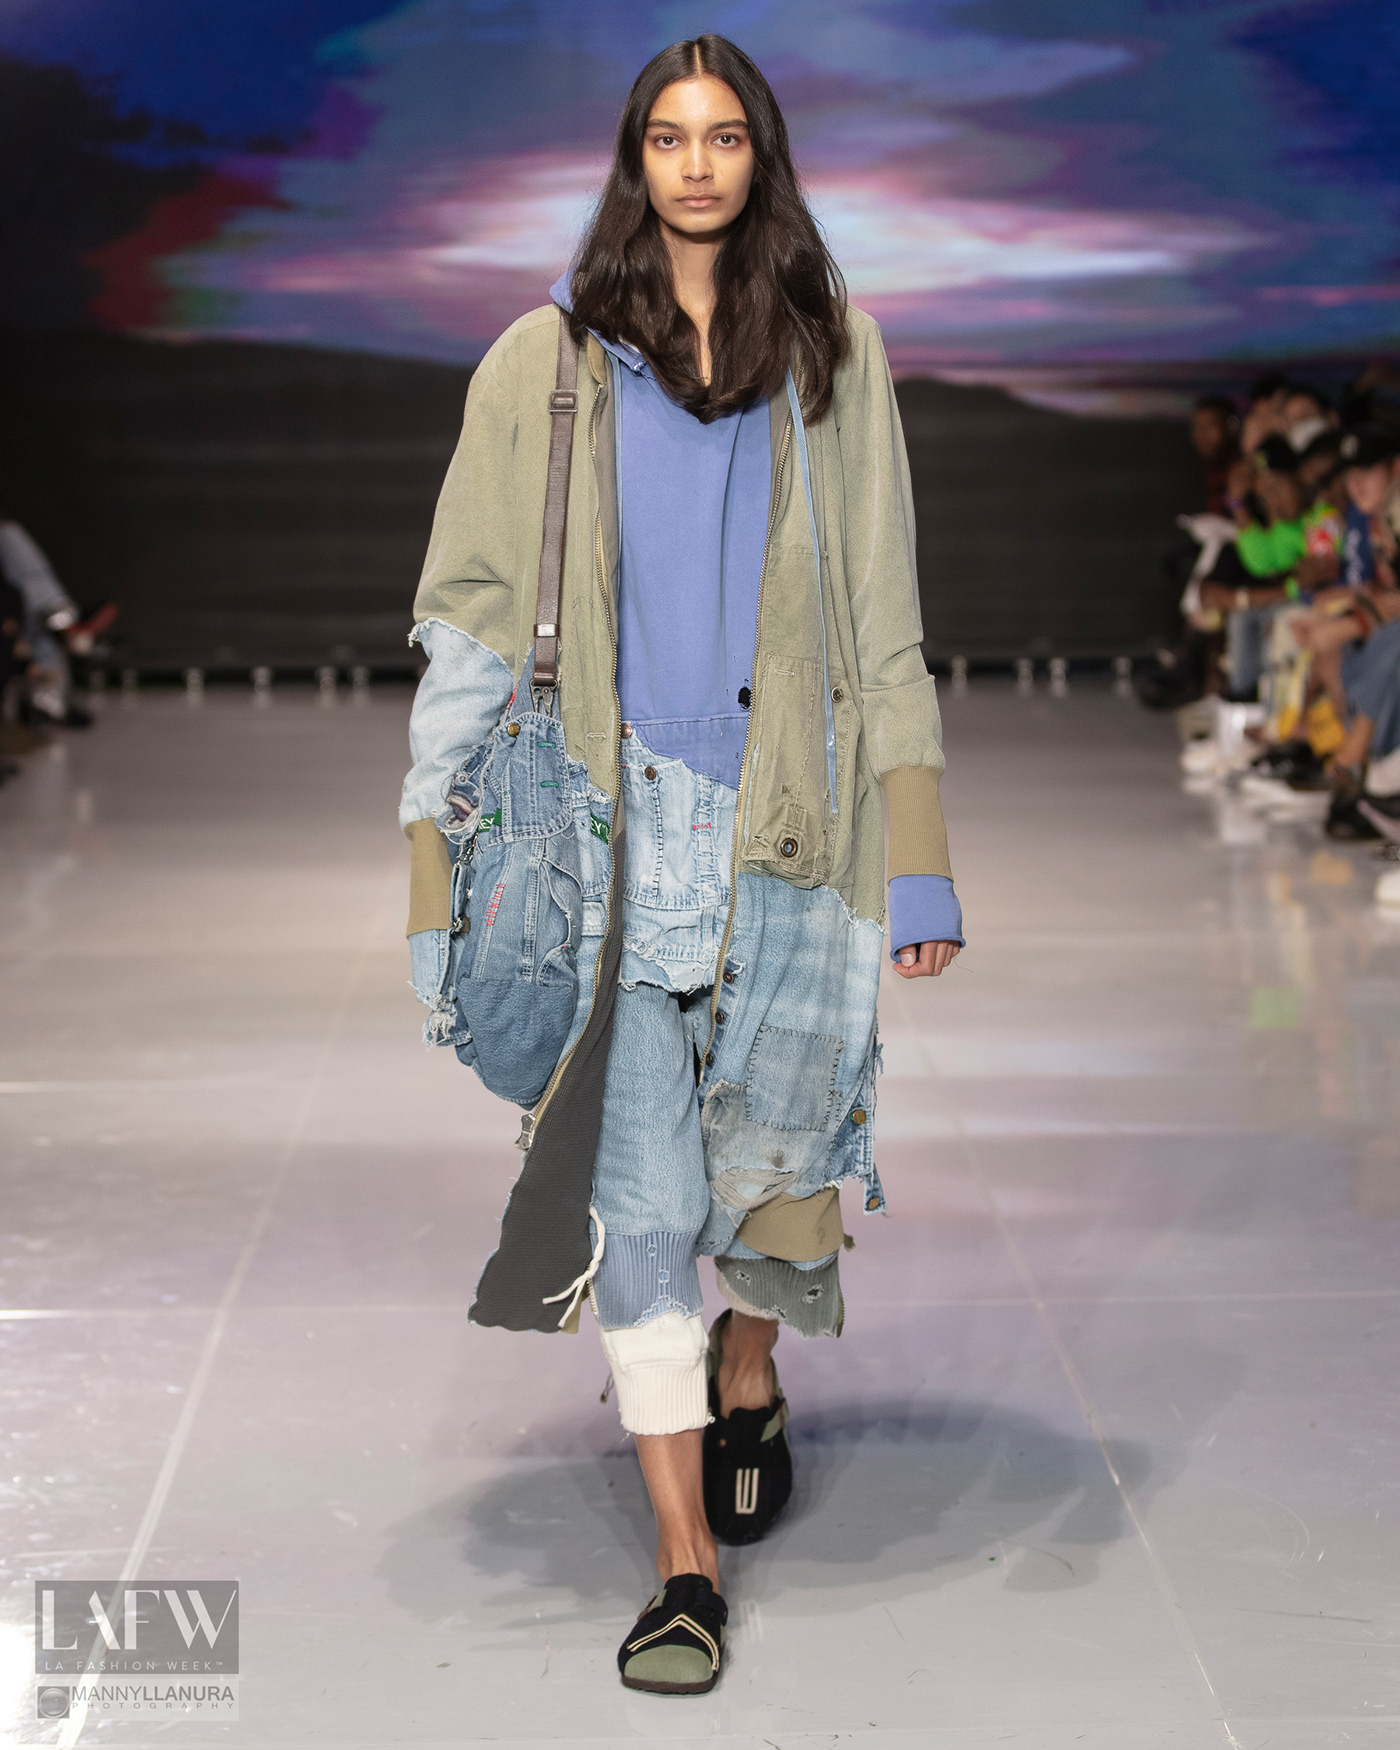 Fashion  fashion week lafashionweek Los Angeles Mannyllanura model runway